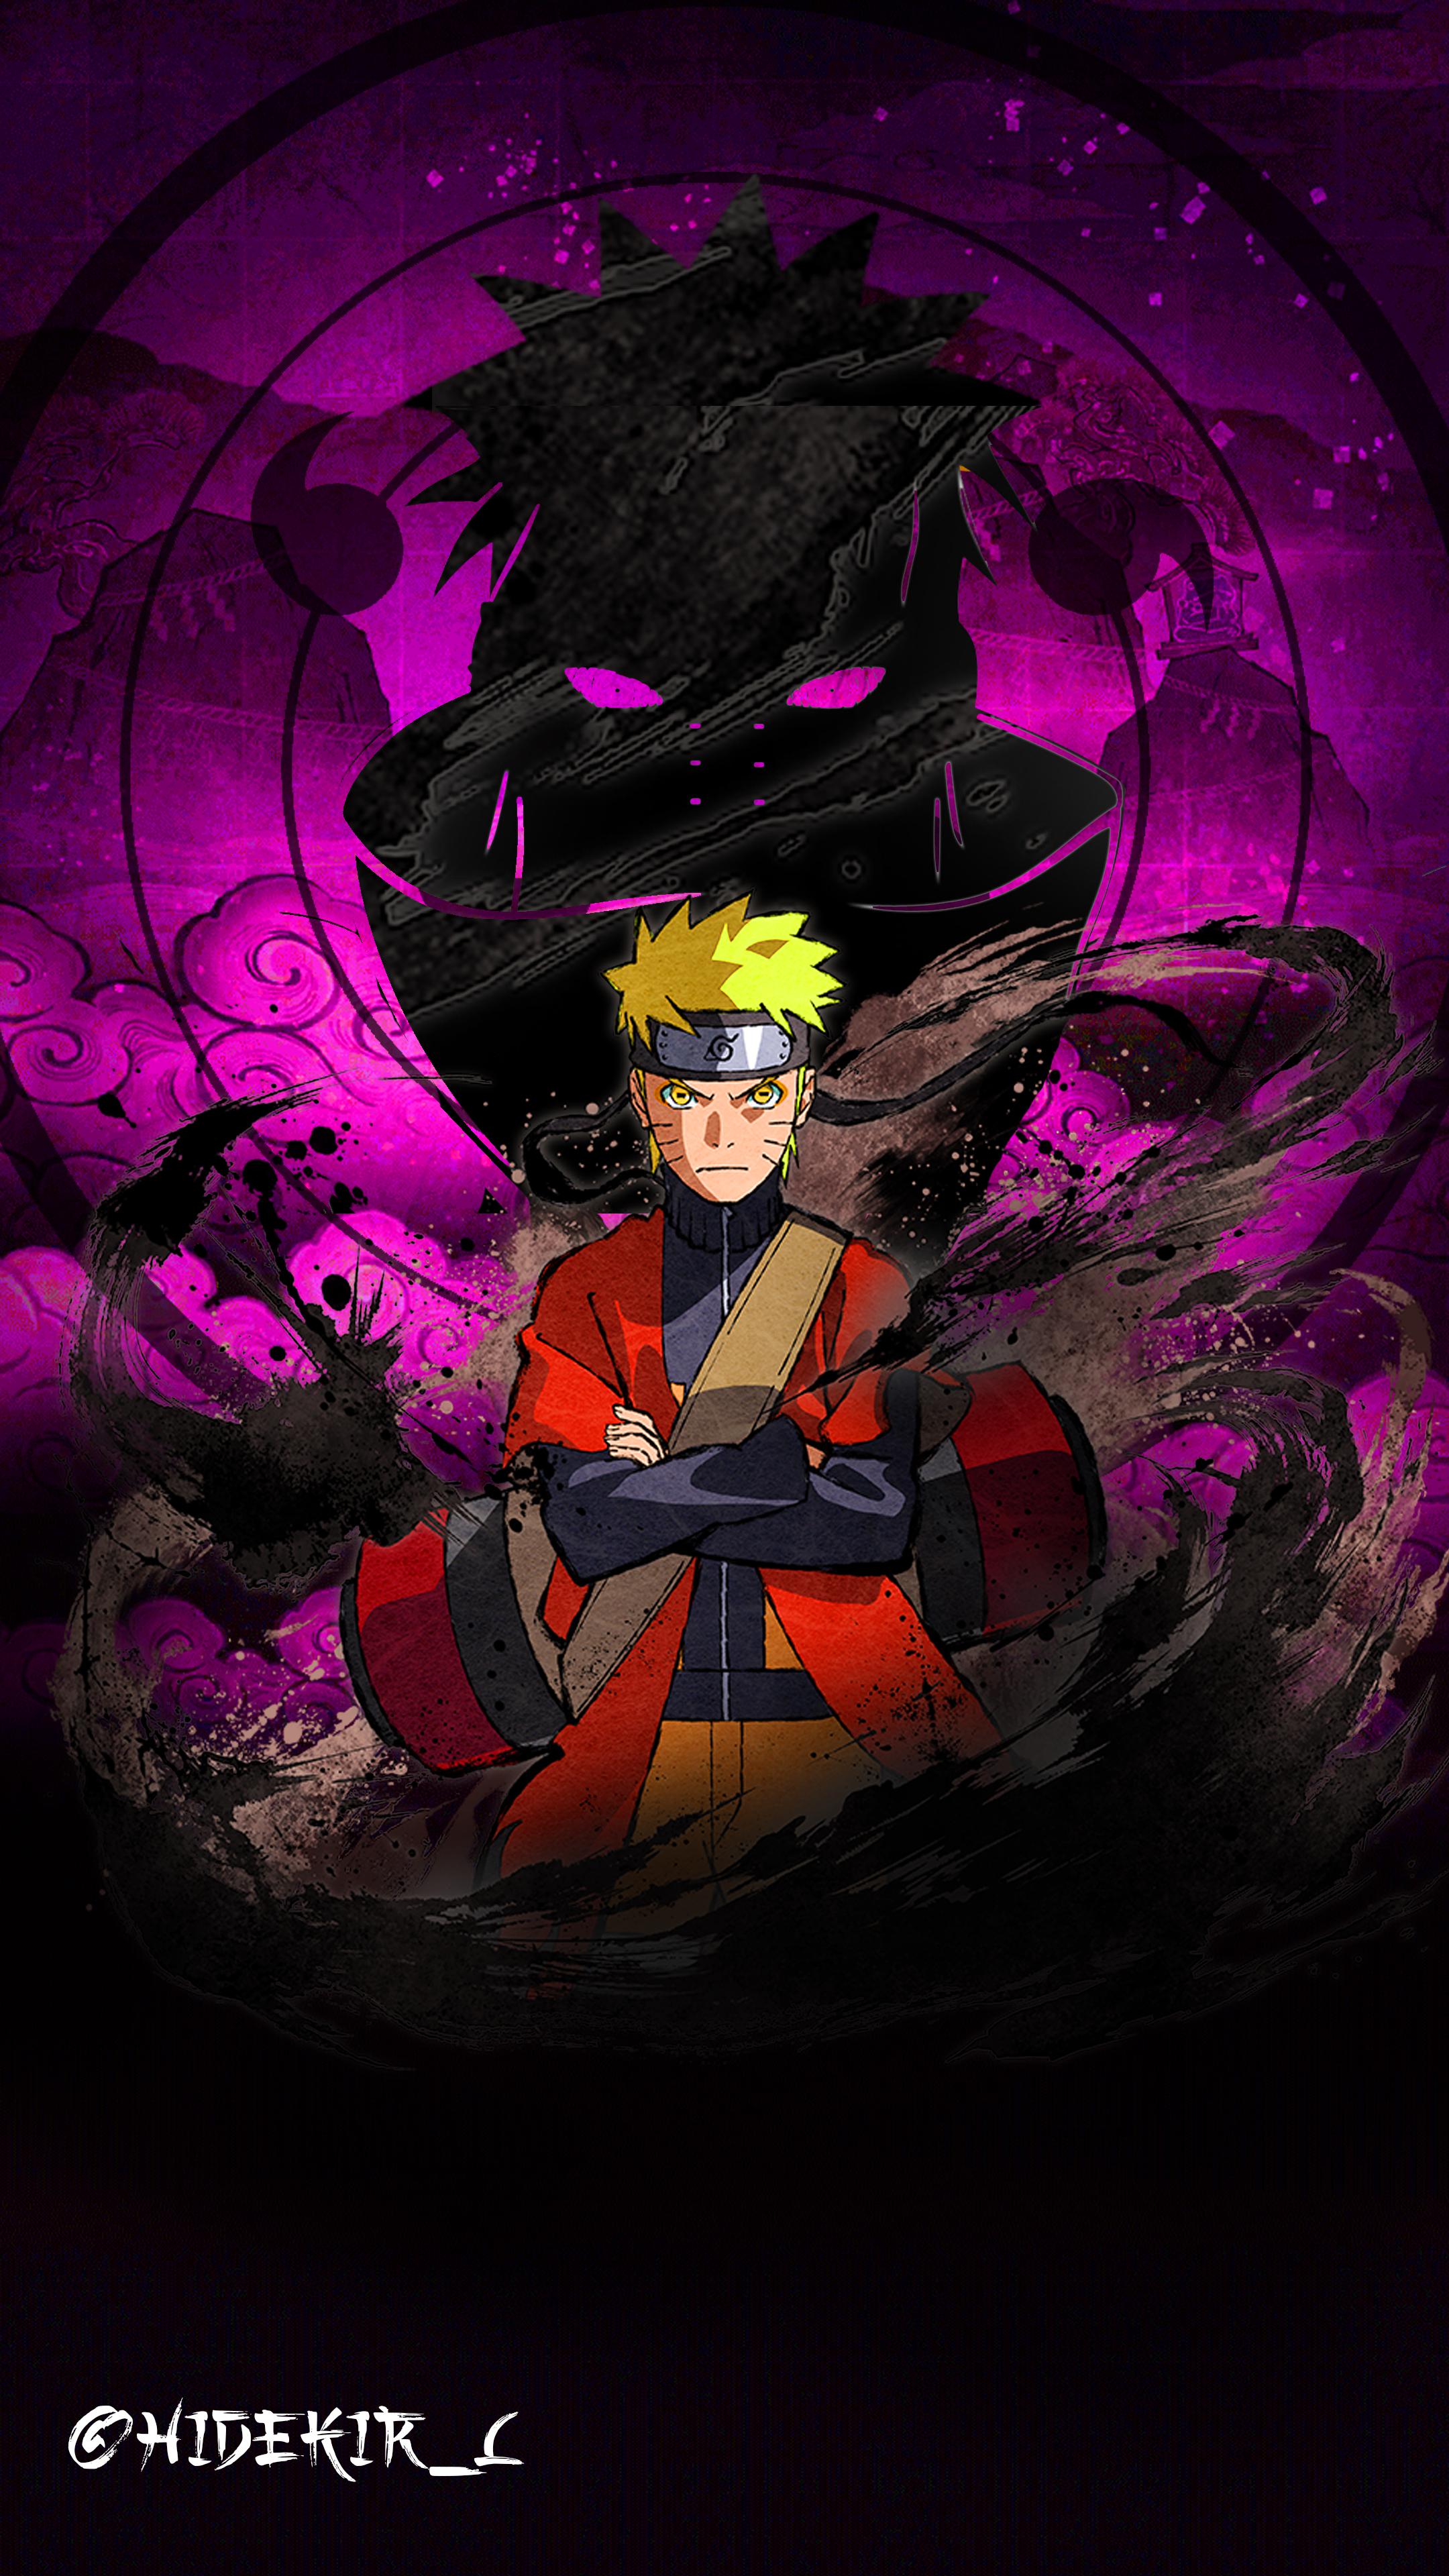 Gambar Naruto Wallpaper Keren gambar ke 1